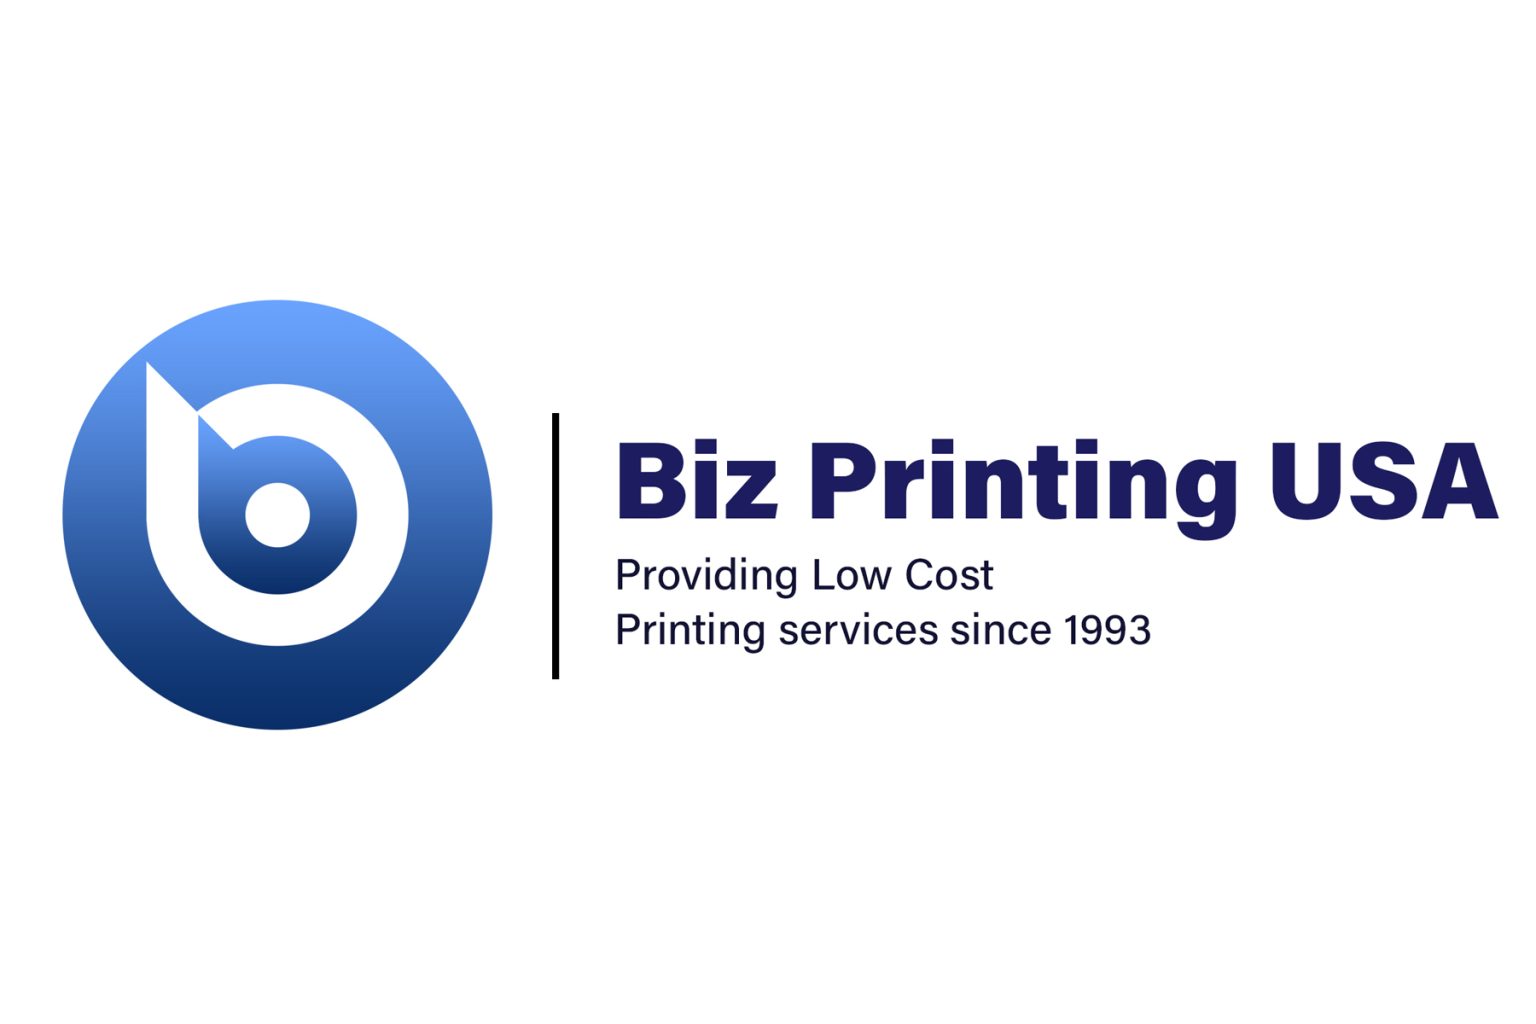 Biz Printing USA